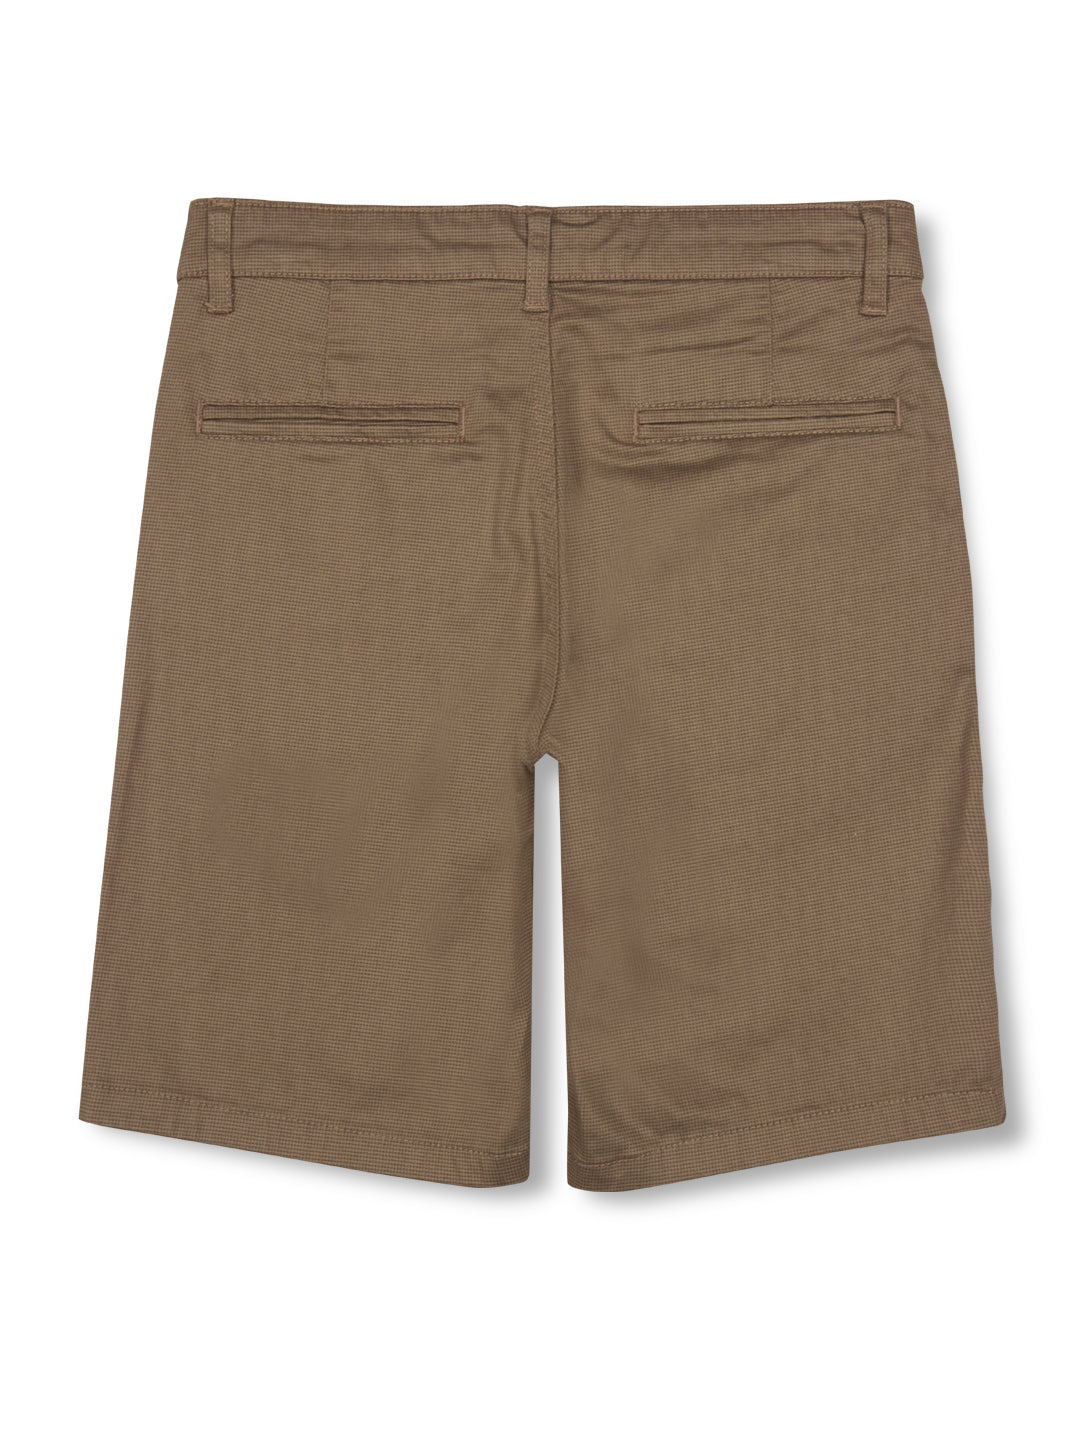 Boys brown woven bermuda shorts